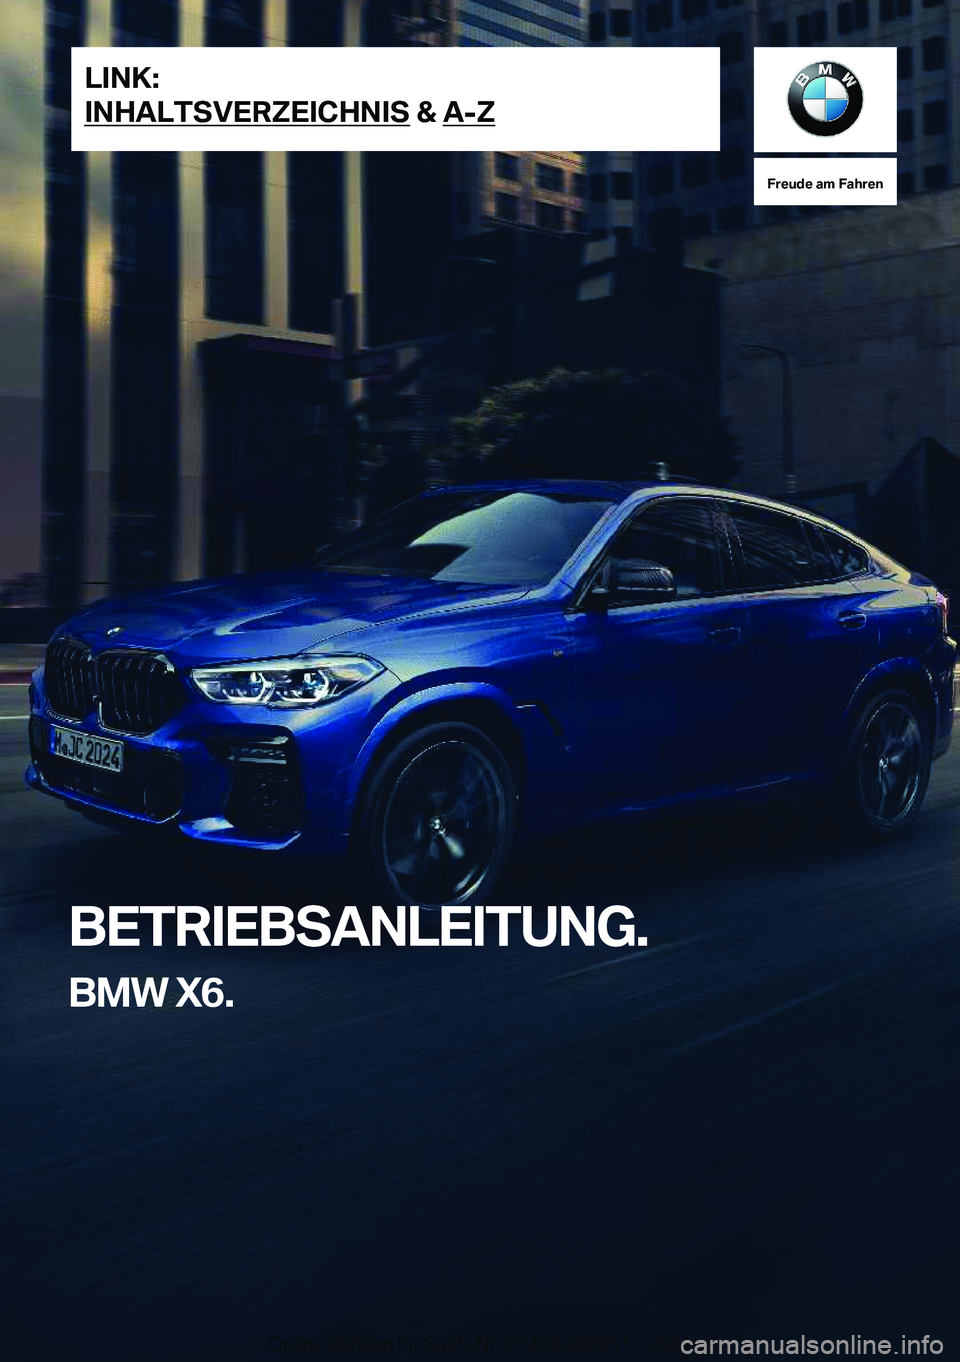 BMW X6 2022  Betriebsanleitungen (in German) �F�r�e�u�d�e��a�m��F�a�h�r�e�n
�B�E�T�R�I�E�B�S�A�N�L�E�I�T�U�N�G�.�B�M�W��X�6�.�L�I�N�K�:
�I�N�H�A�L�T�S�V�E�R�Z�E�I�C�H�N�I�S��&��A�-�Z�O�n�l�i�n�e��V�e�r�s�i�o�n��f�